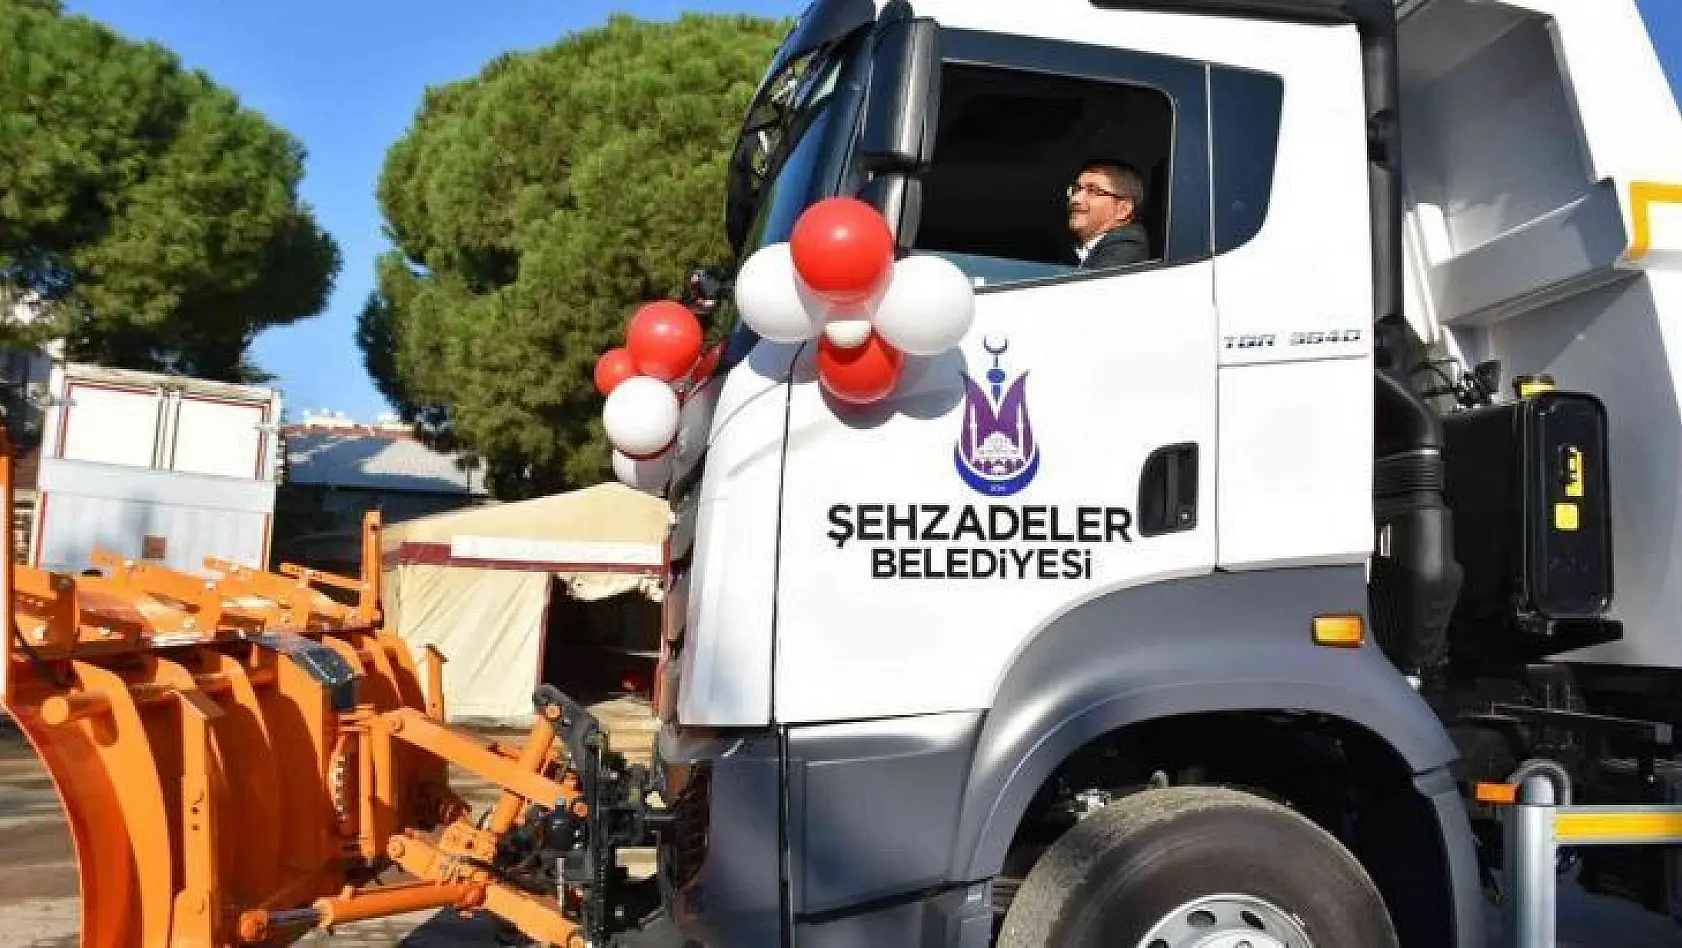 Şehzadeler Belediyesinin yeni araçları törenle tanıtıldı